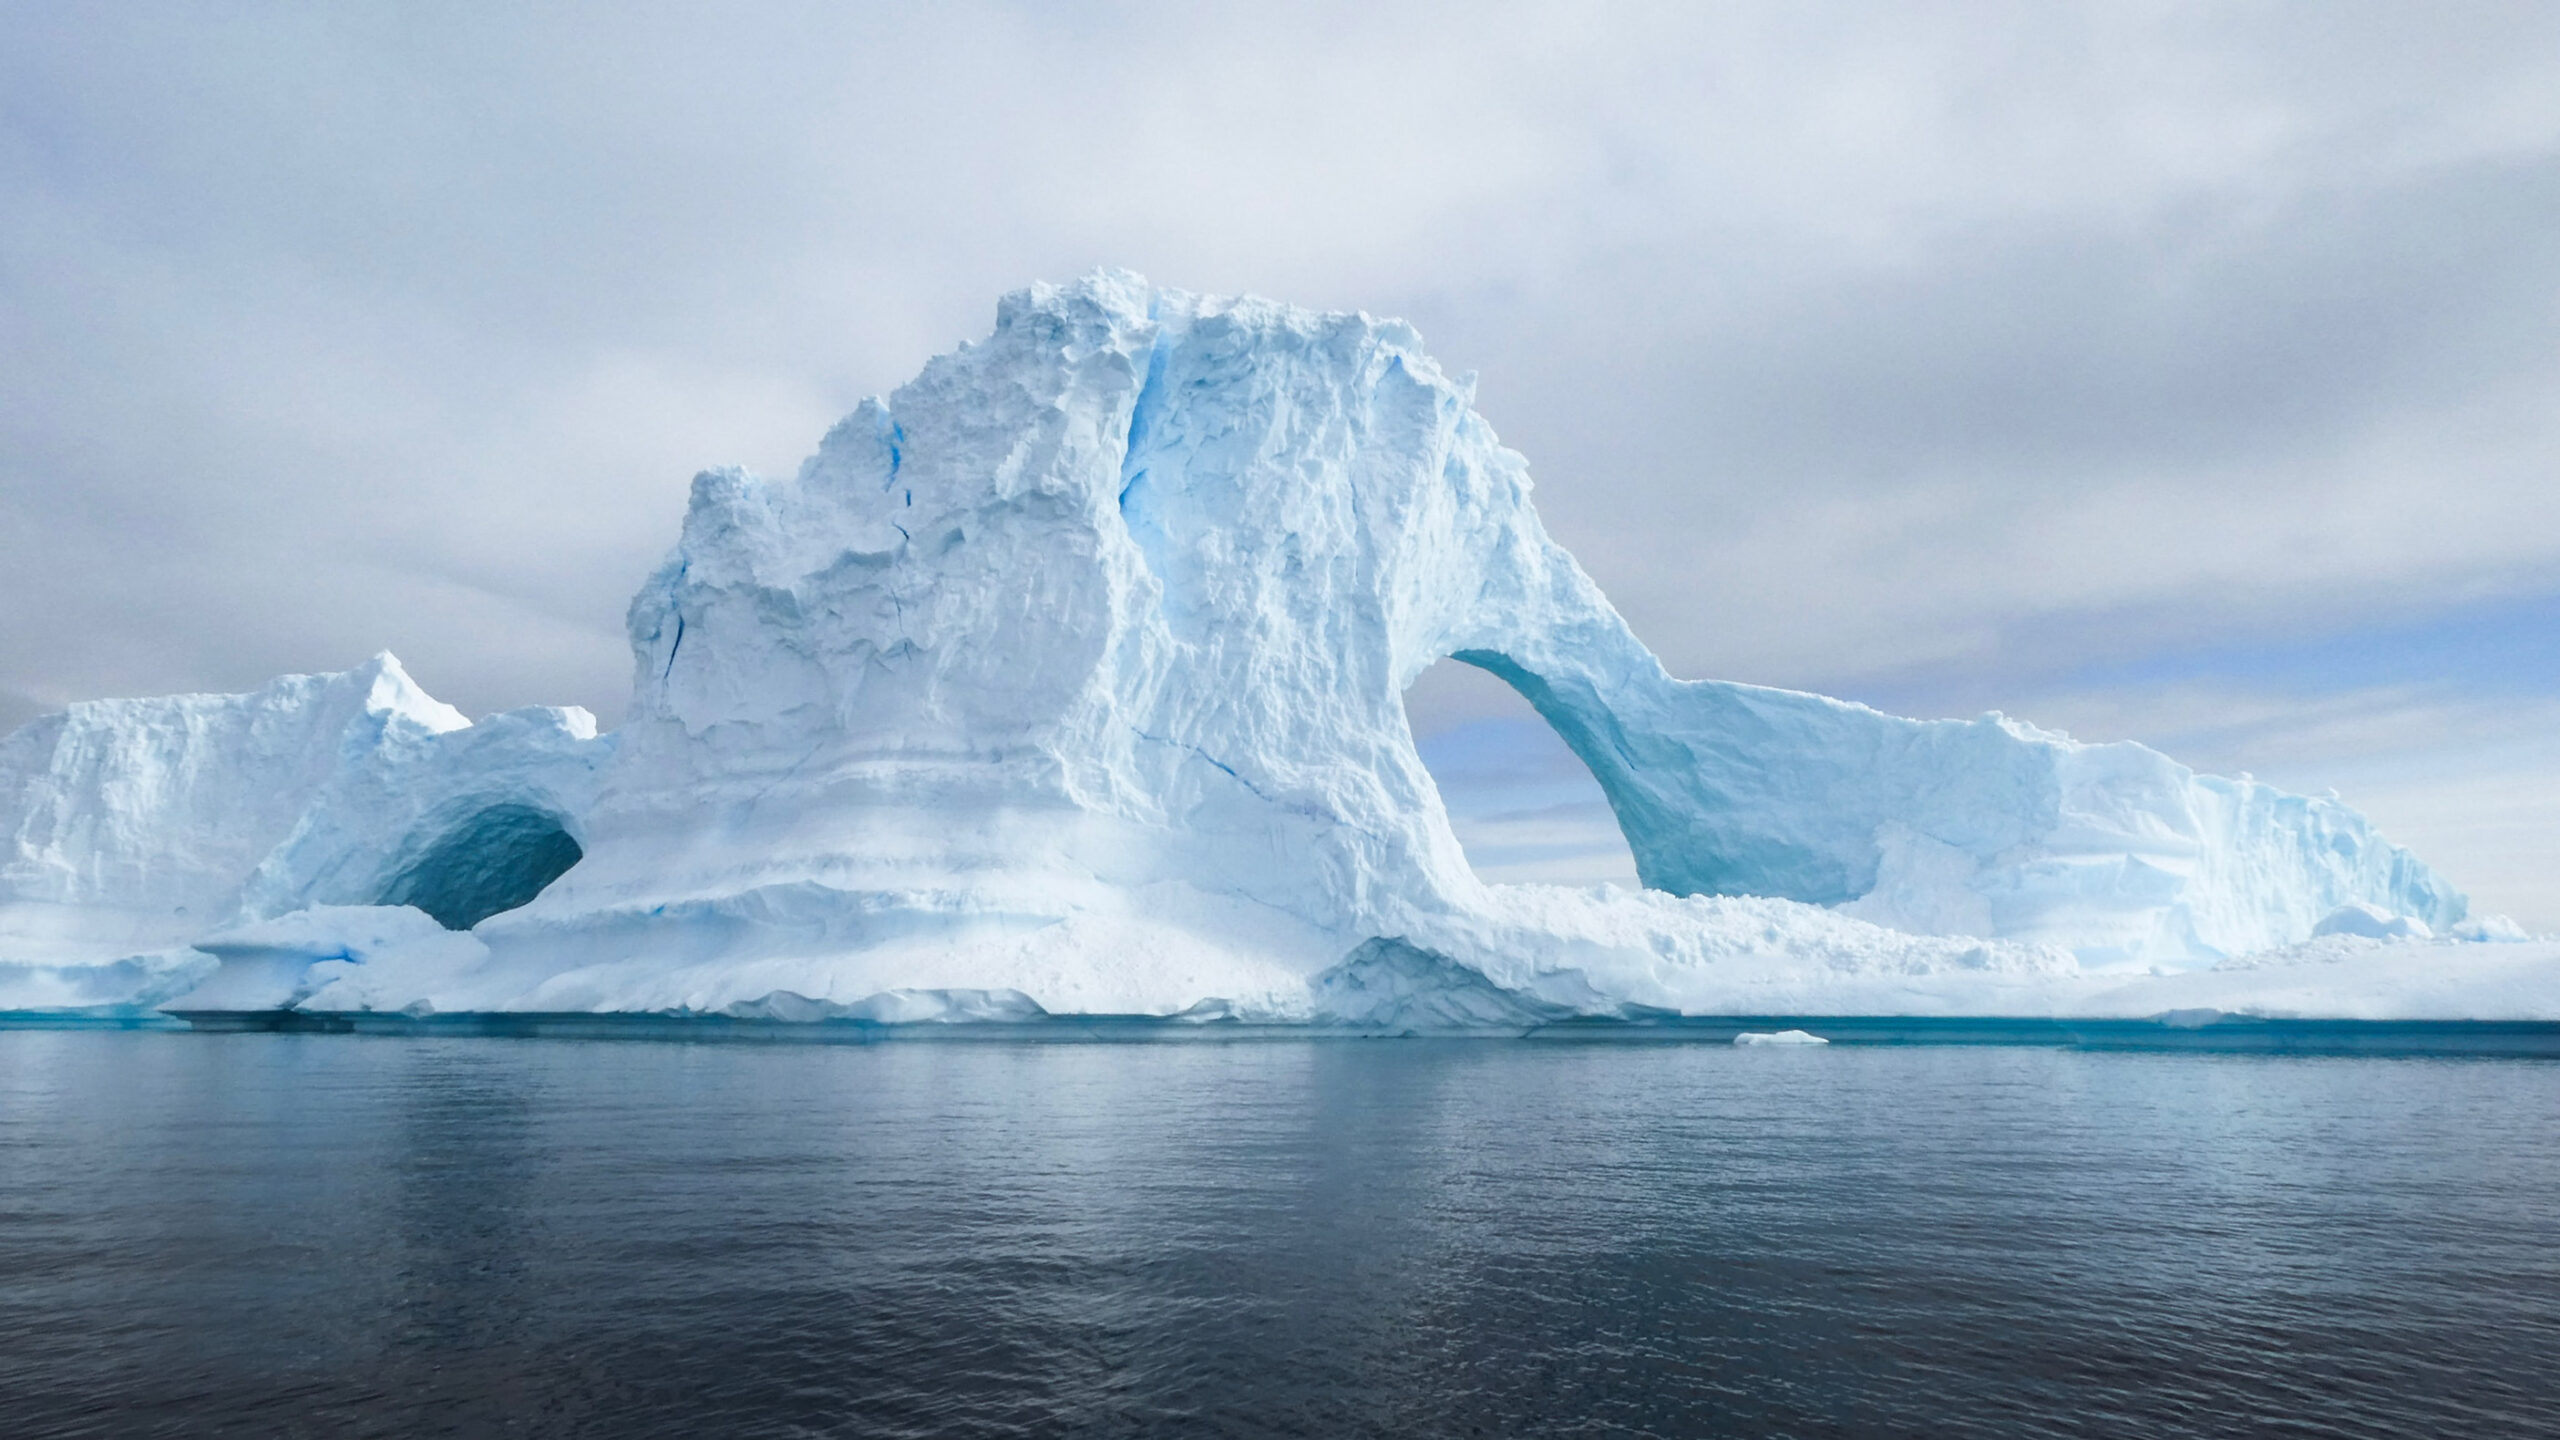 pristine white and blue glaciers in antarctica